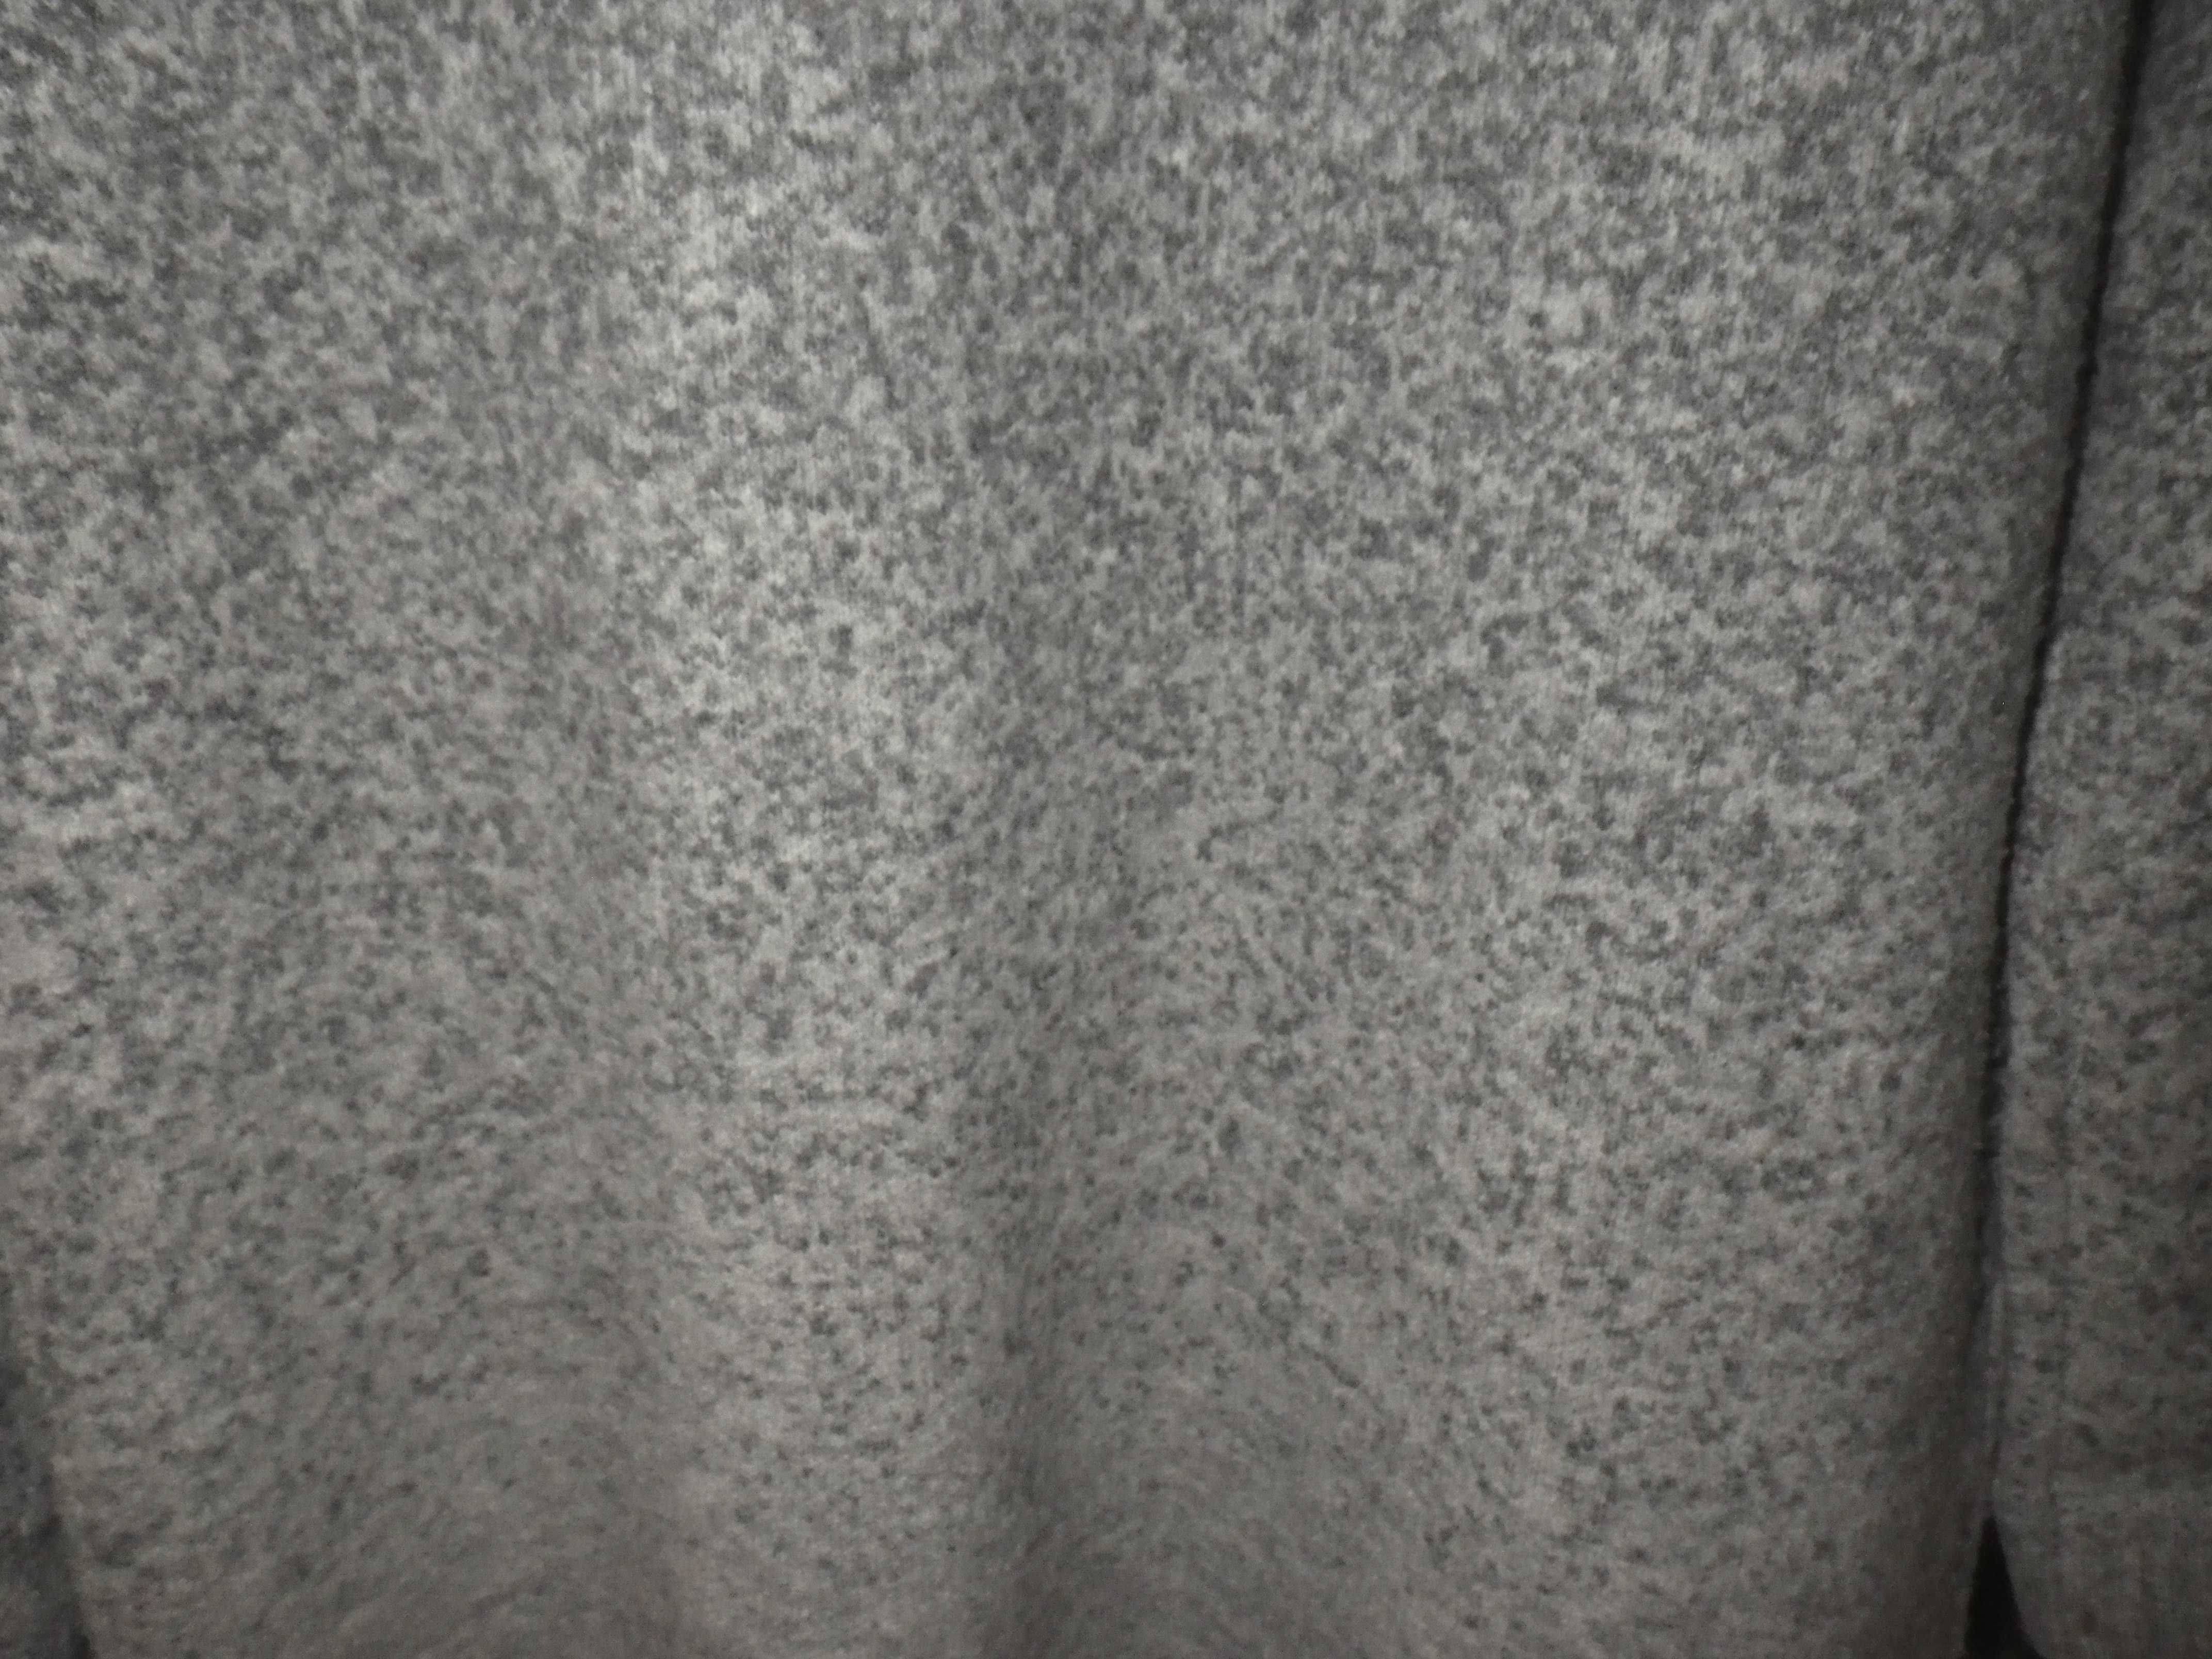 Mohito kardigan płaszczyk w odcieniach szarości r XL- uniwersalny